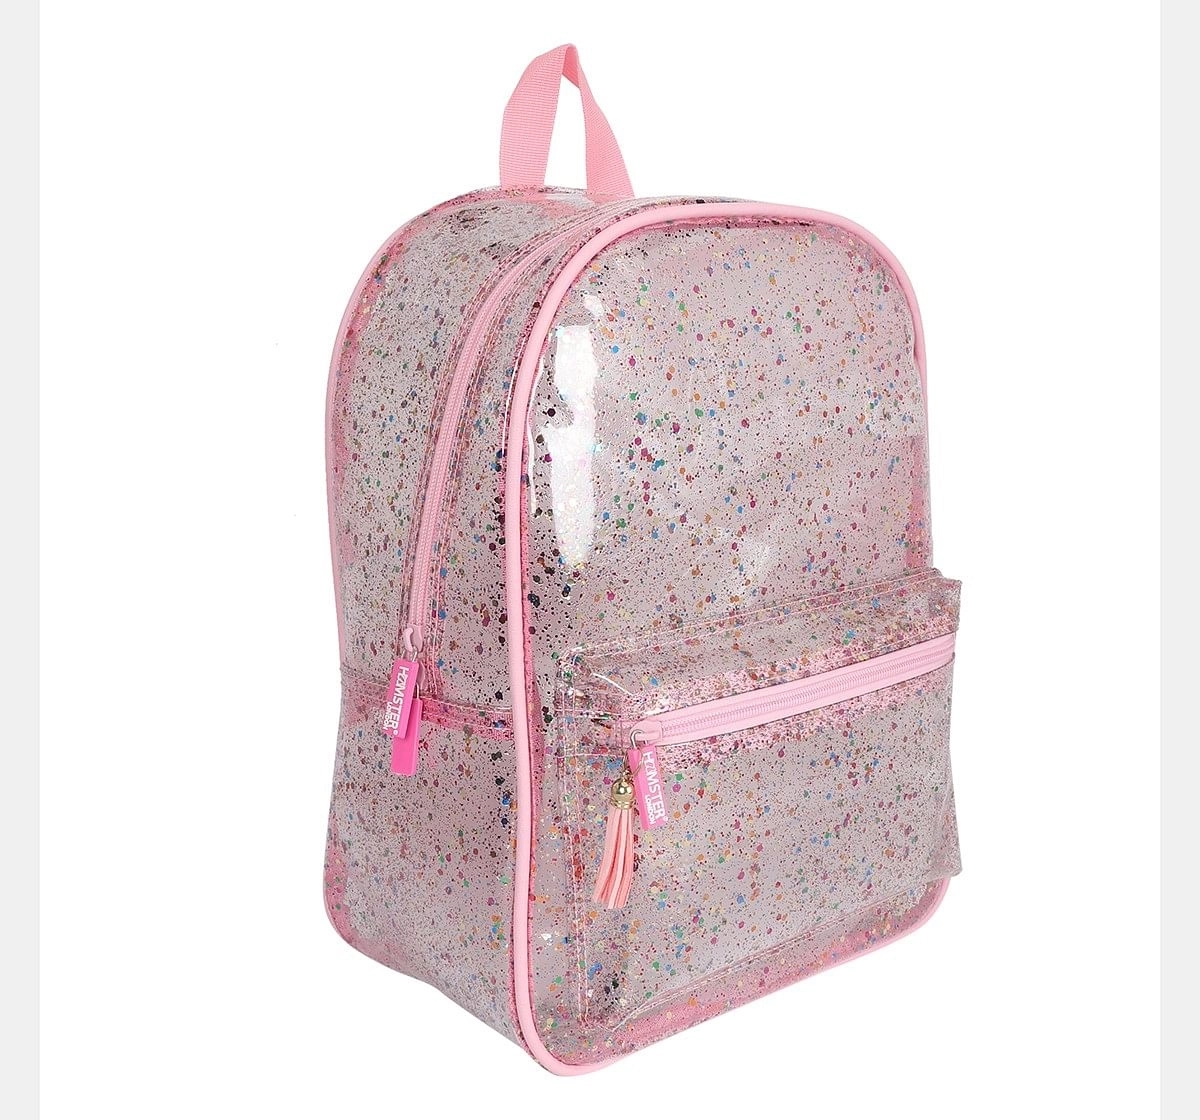 Hamster London Glitter Pink Backpack, 6Y+